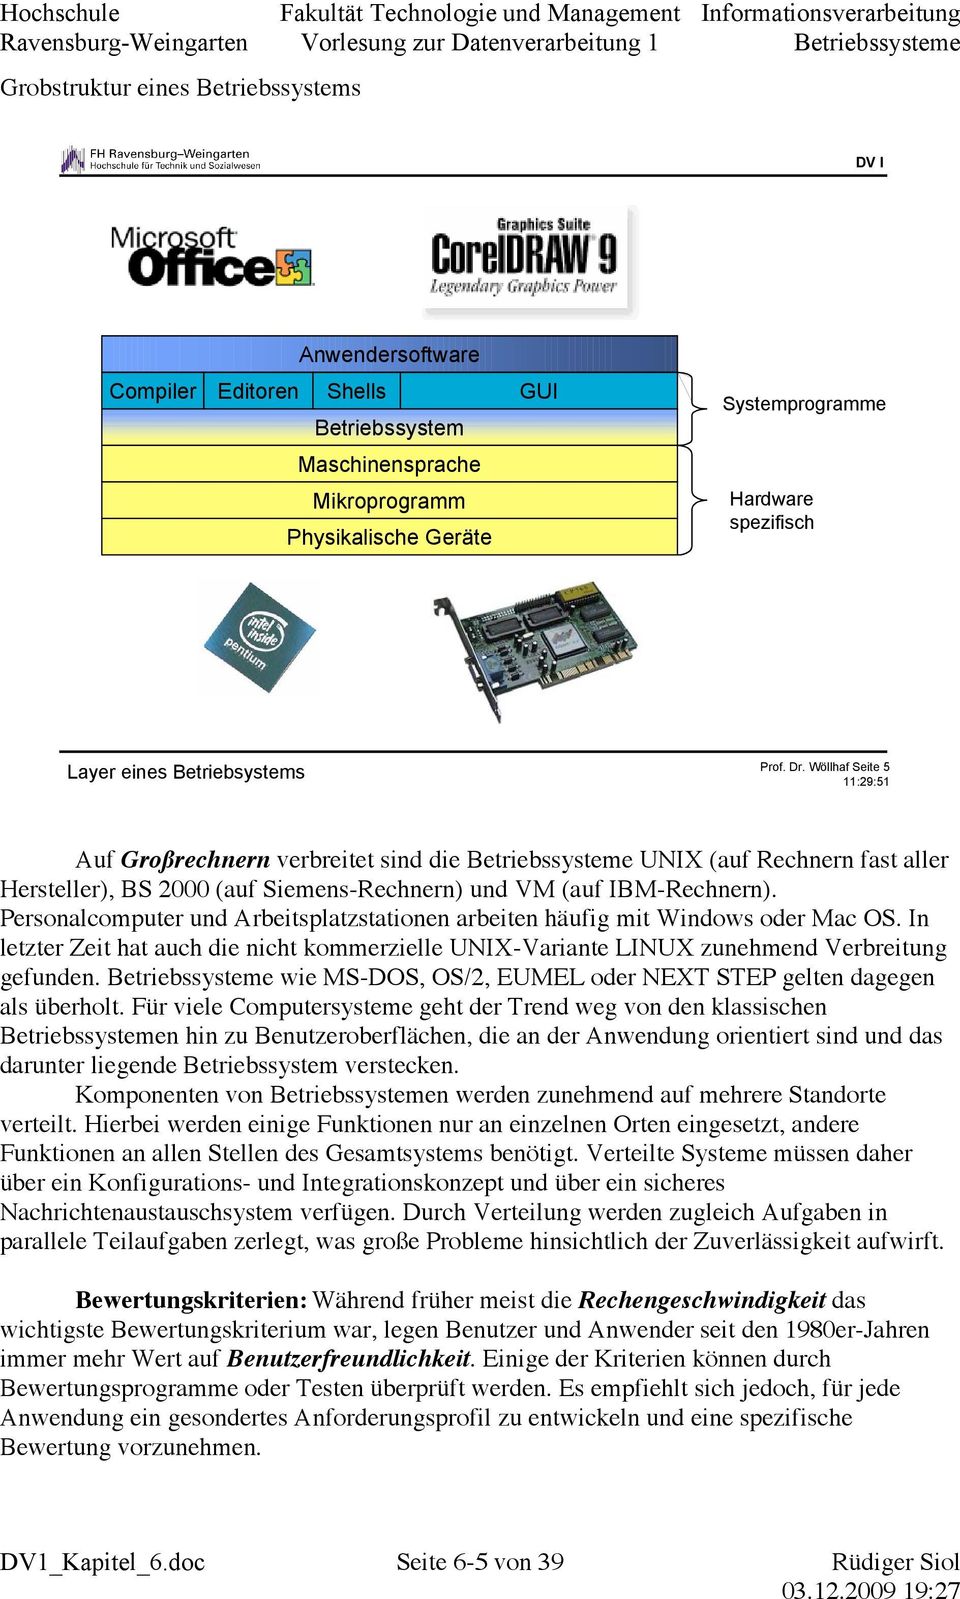 Wöllhaf Seite 5 11:29:51 Auf Großrechnern verbreitet sind die Betriebssysteme UNIX (auf Rechnern fast aller Hersteller), BS 2000 (auf Siemens-Rechnern) und VM (auf IBM-Rechnern).